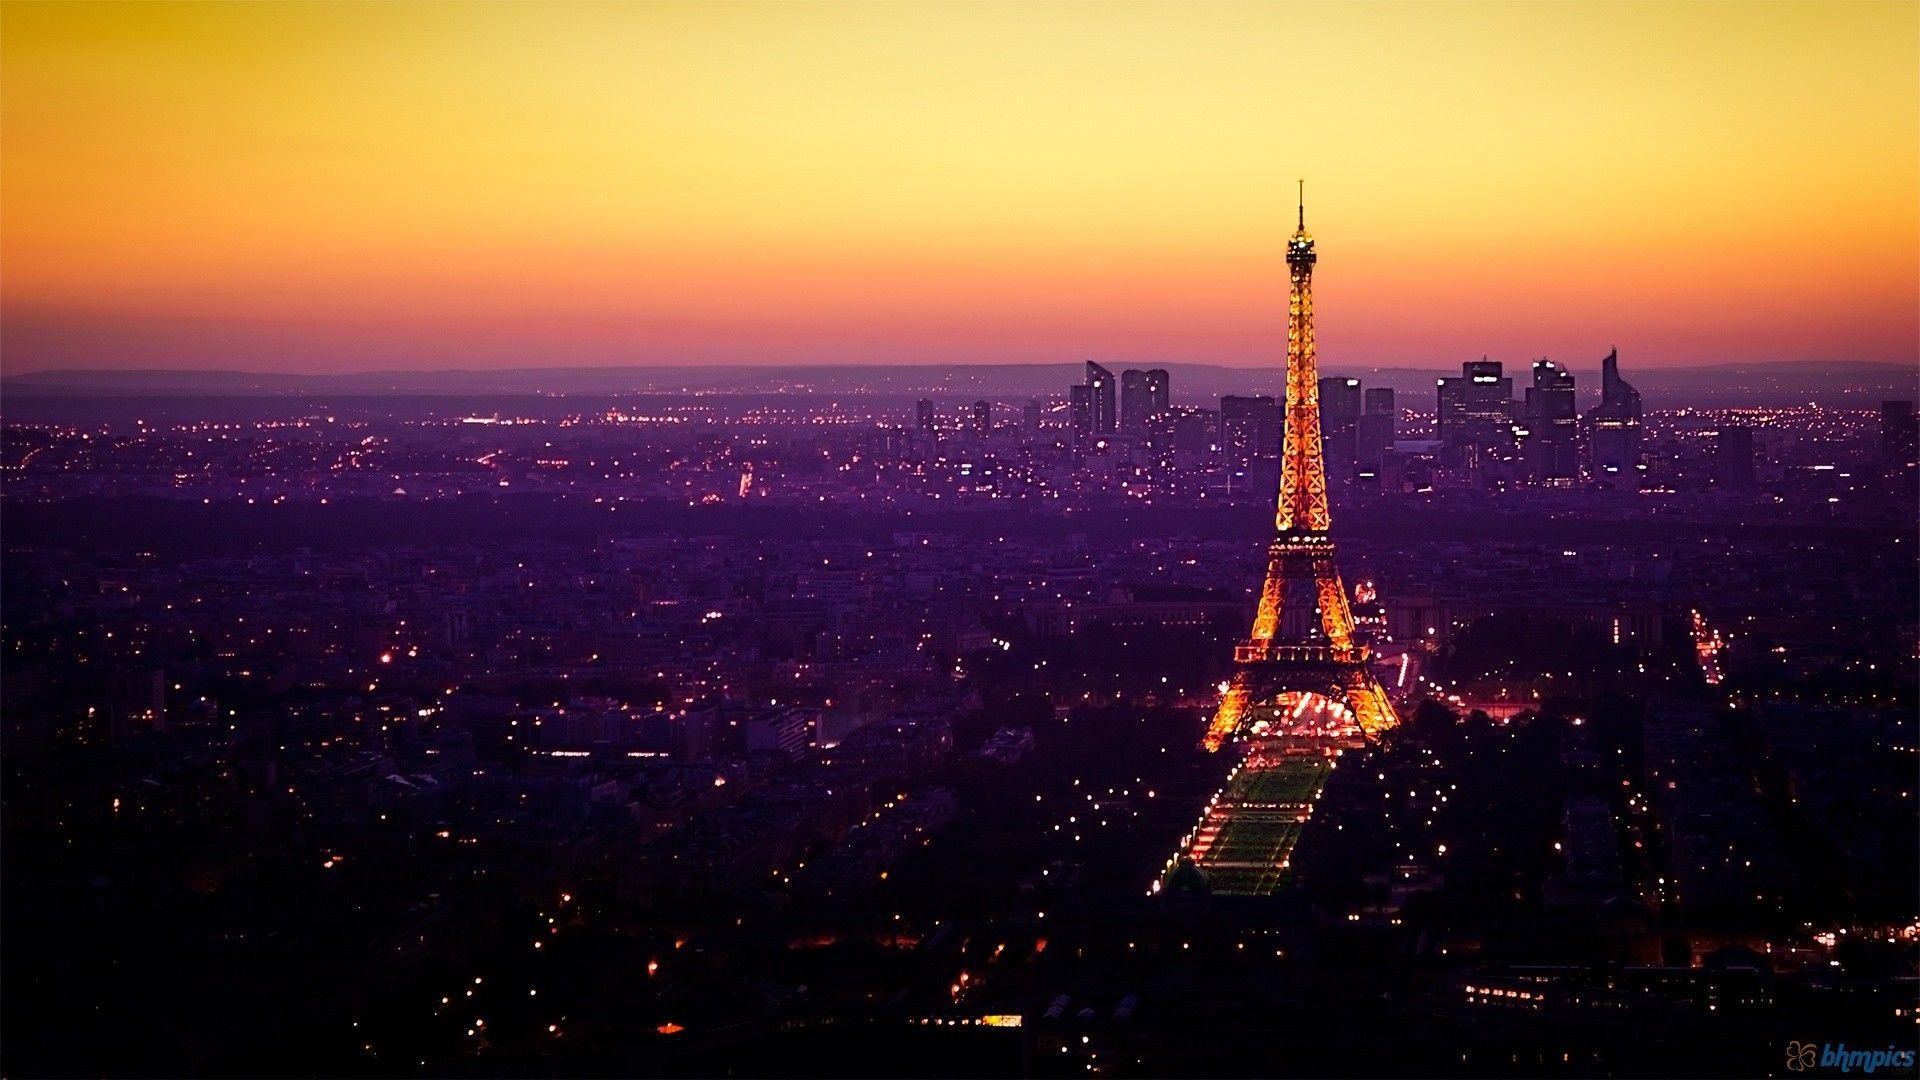 Couché de soleil sur Paris. Eiffel tower at night, Eiffel tower, Paris